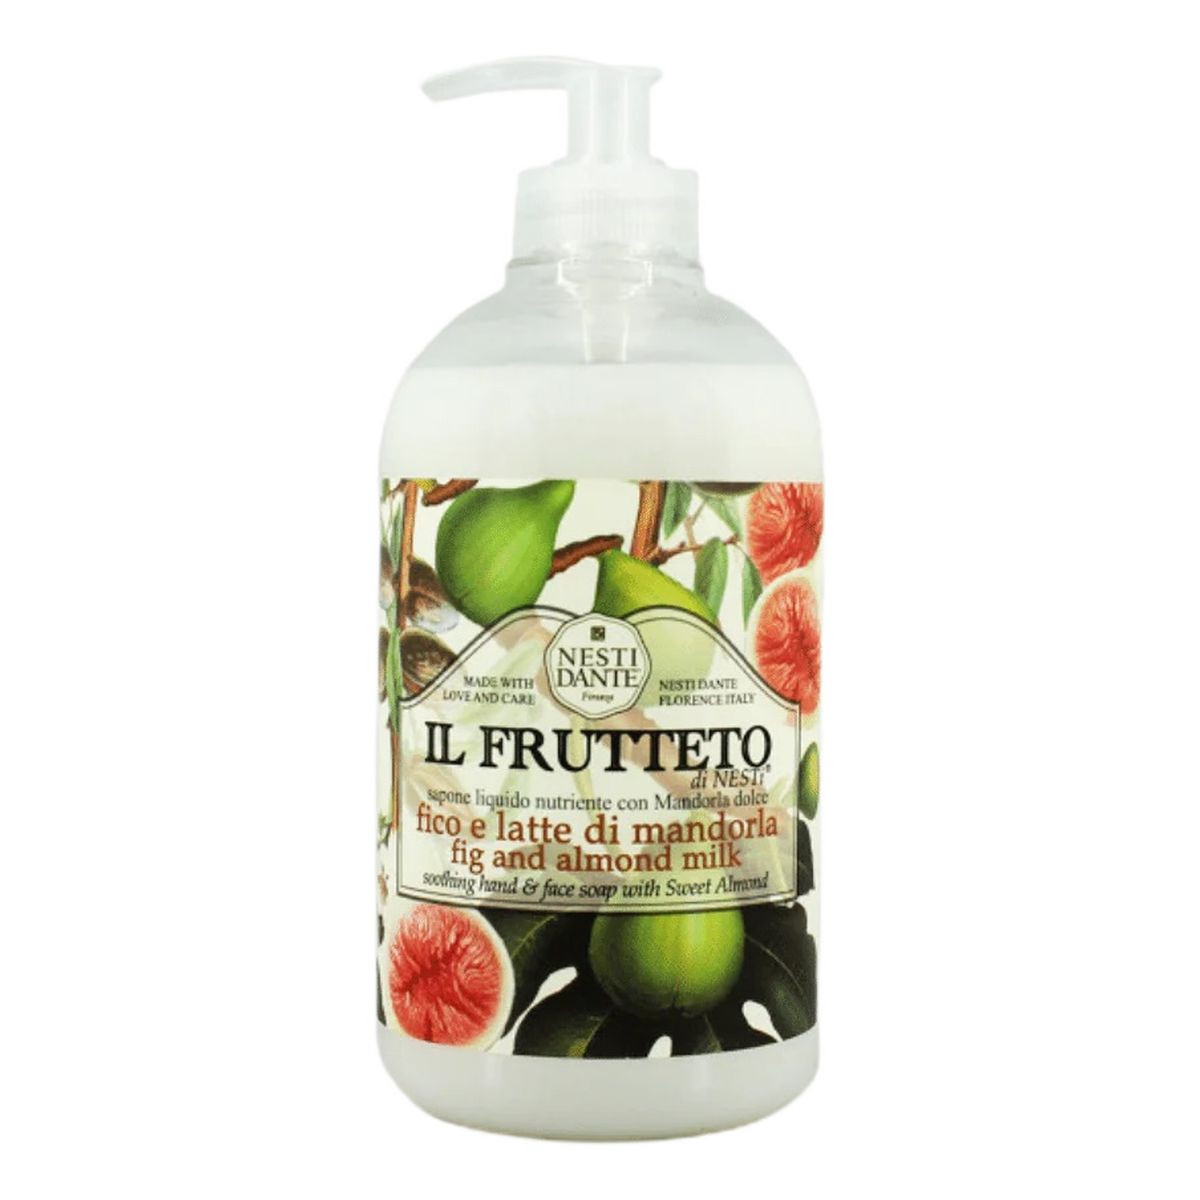 Nesti Dante Il Frutteto nawilżające Mydło w płynie fig and almond milk 500ml